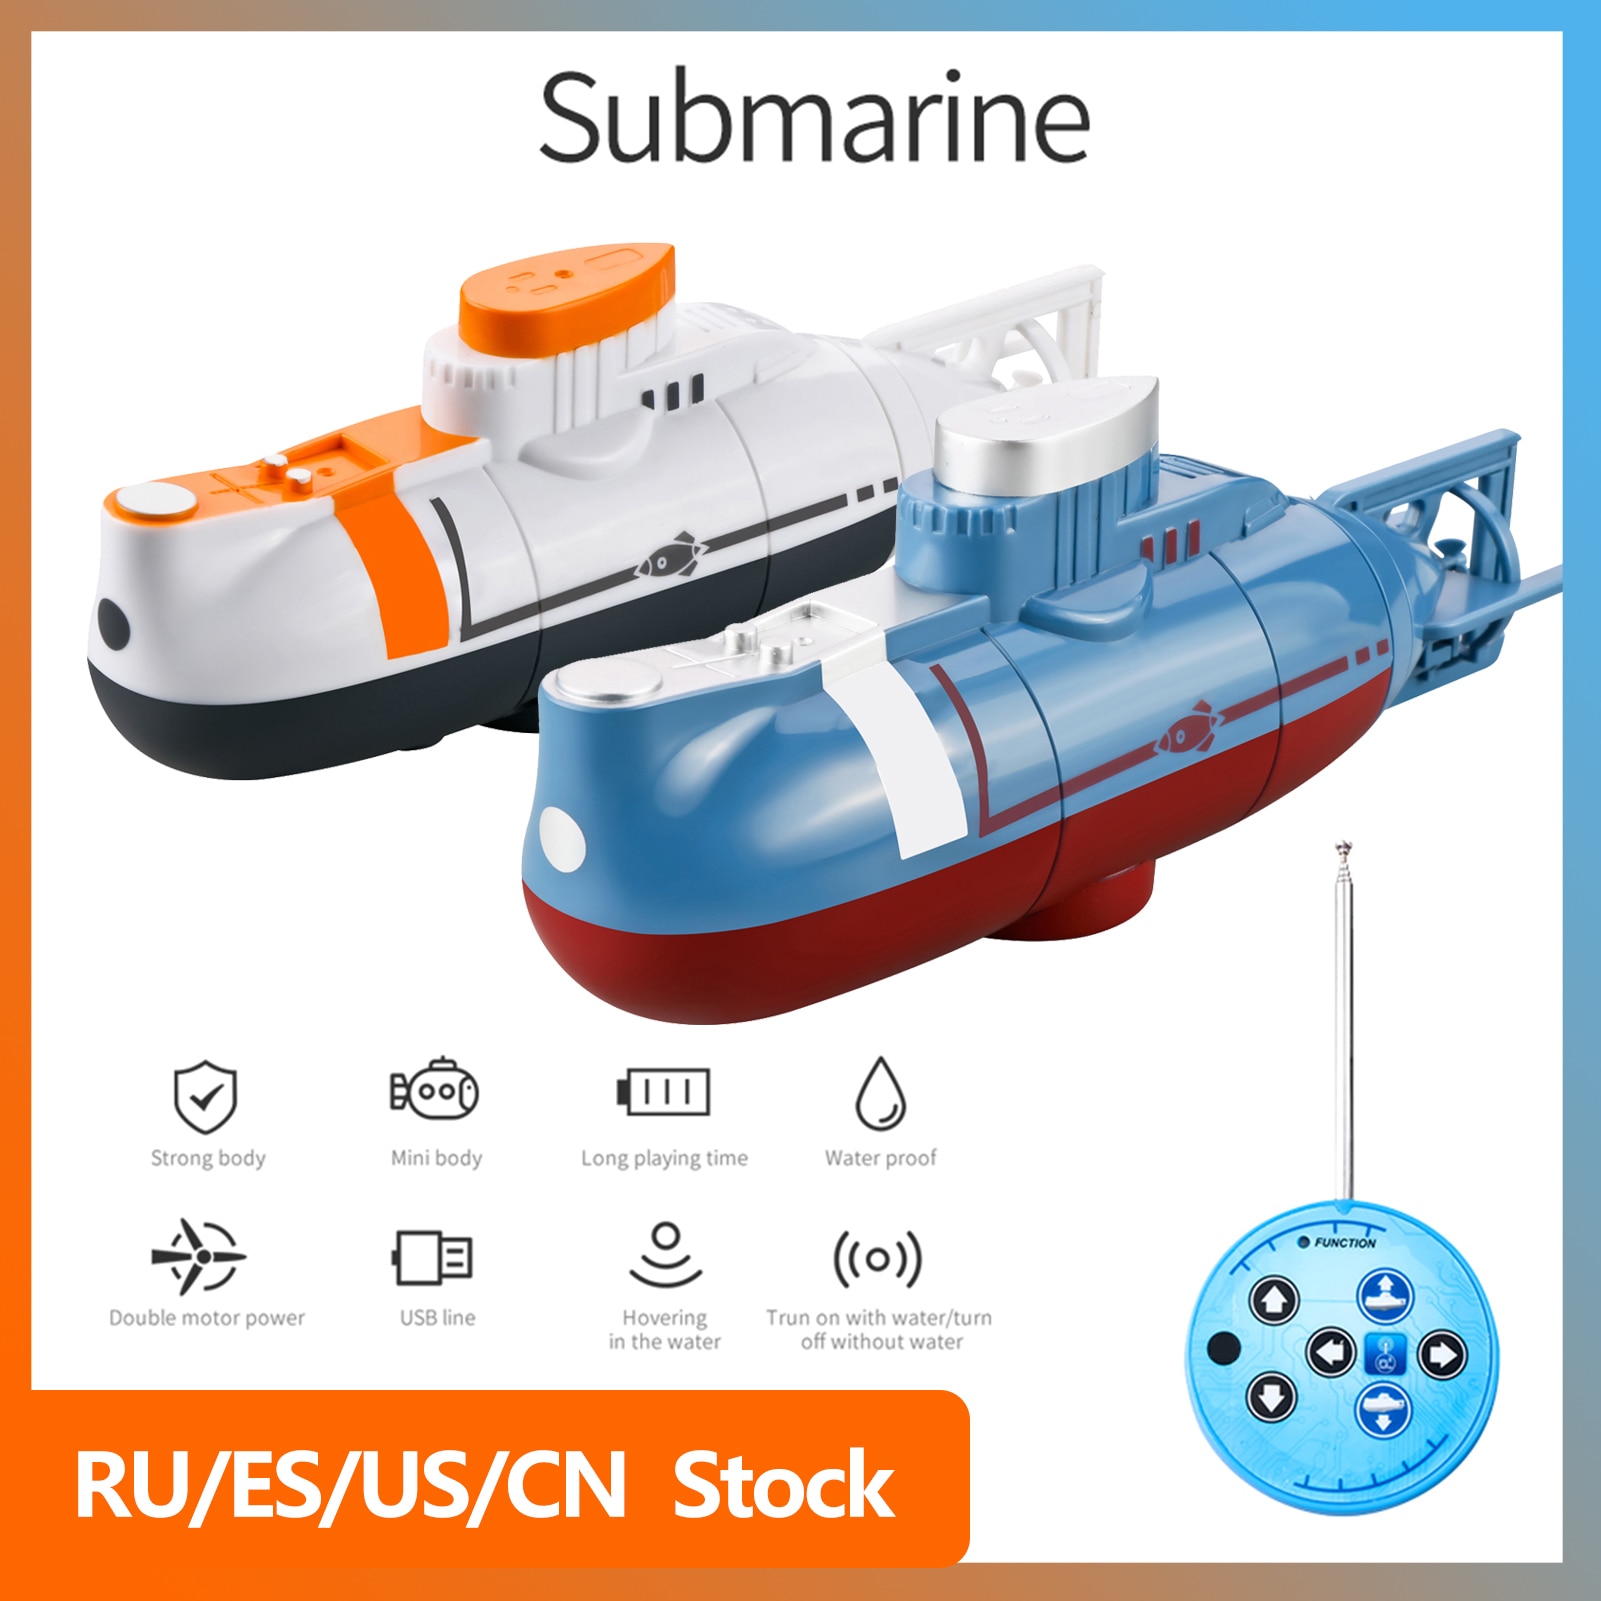 미니 RC 잠수함 0.1 m/s 속도 원격 제어 보트 방수 다이빙 장난감, 시뮬레이션 모델 선물, 어린이 소년 소녀 새해 선물